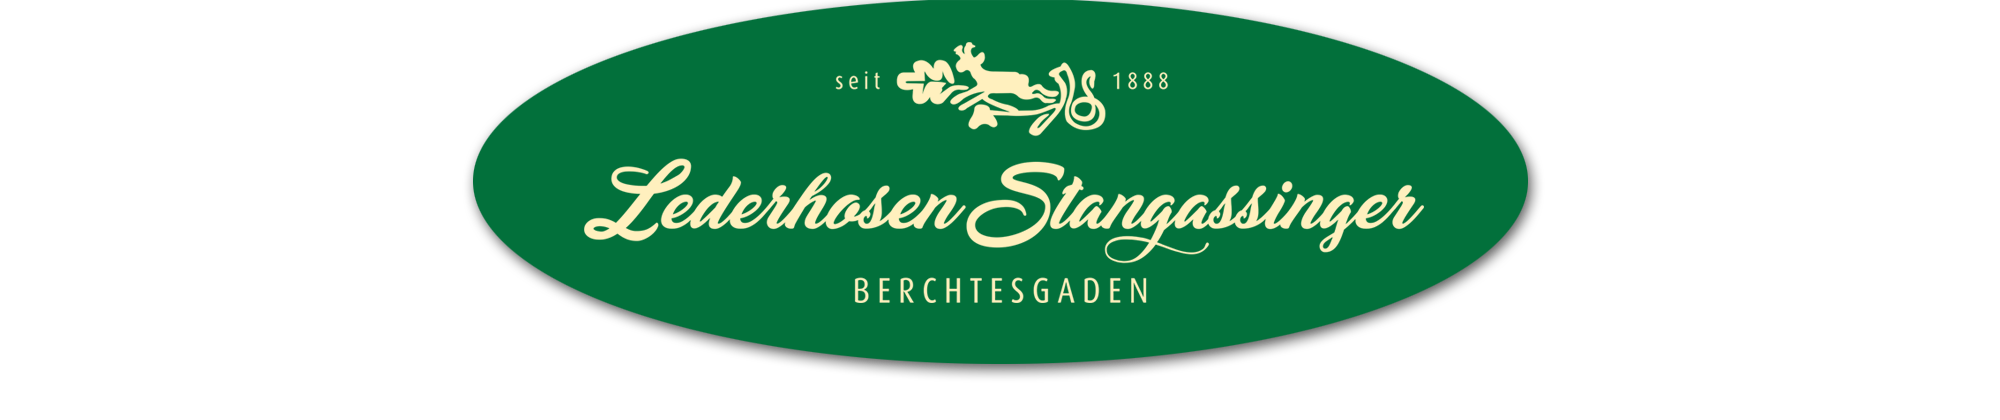 Lederhosen Stangassinger Berchtesgaden